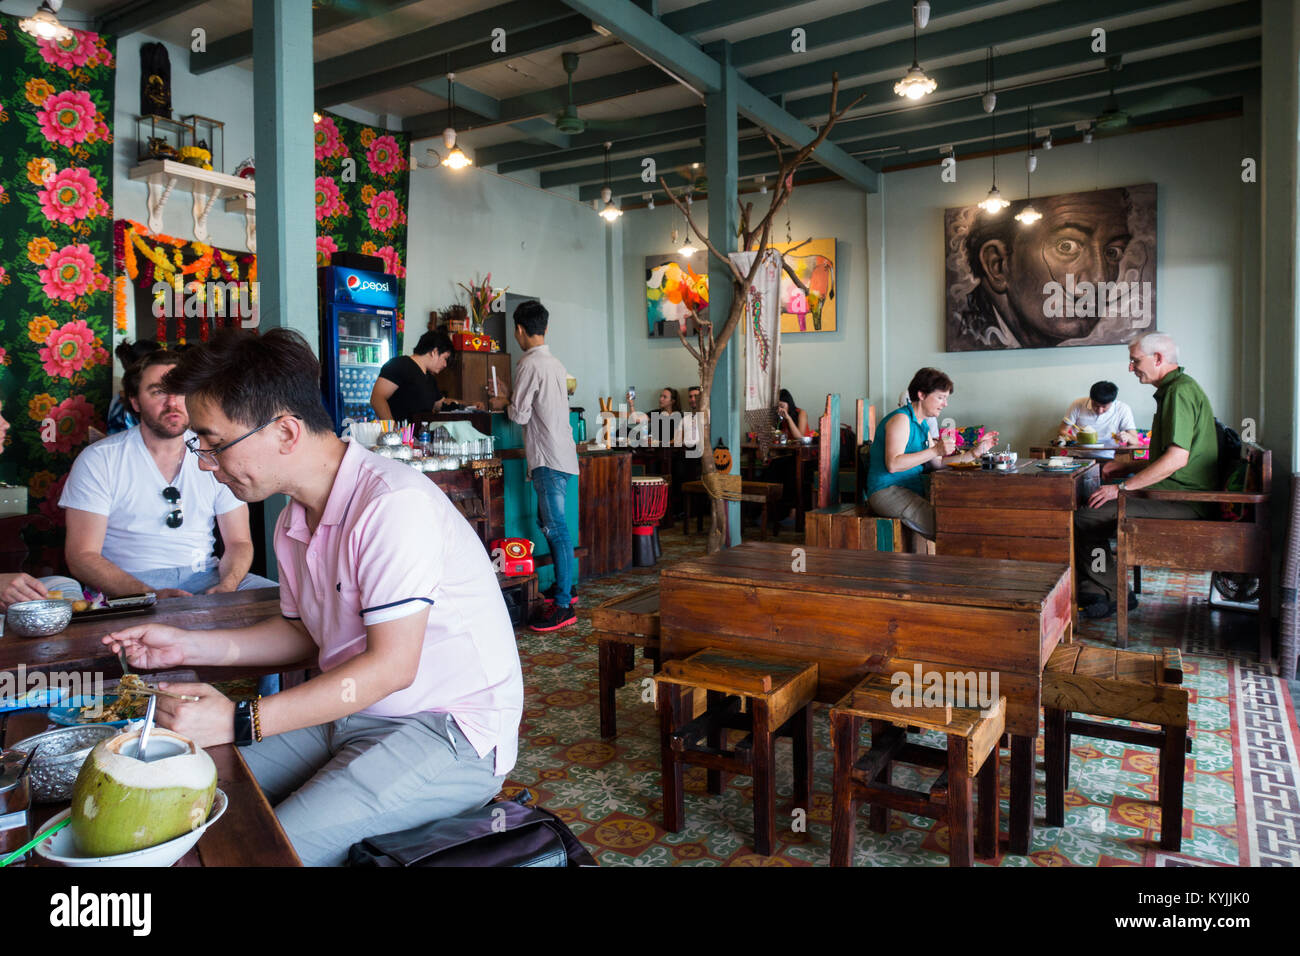 Bangkok Thailand People eating at cafe Stock Photo